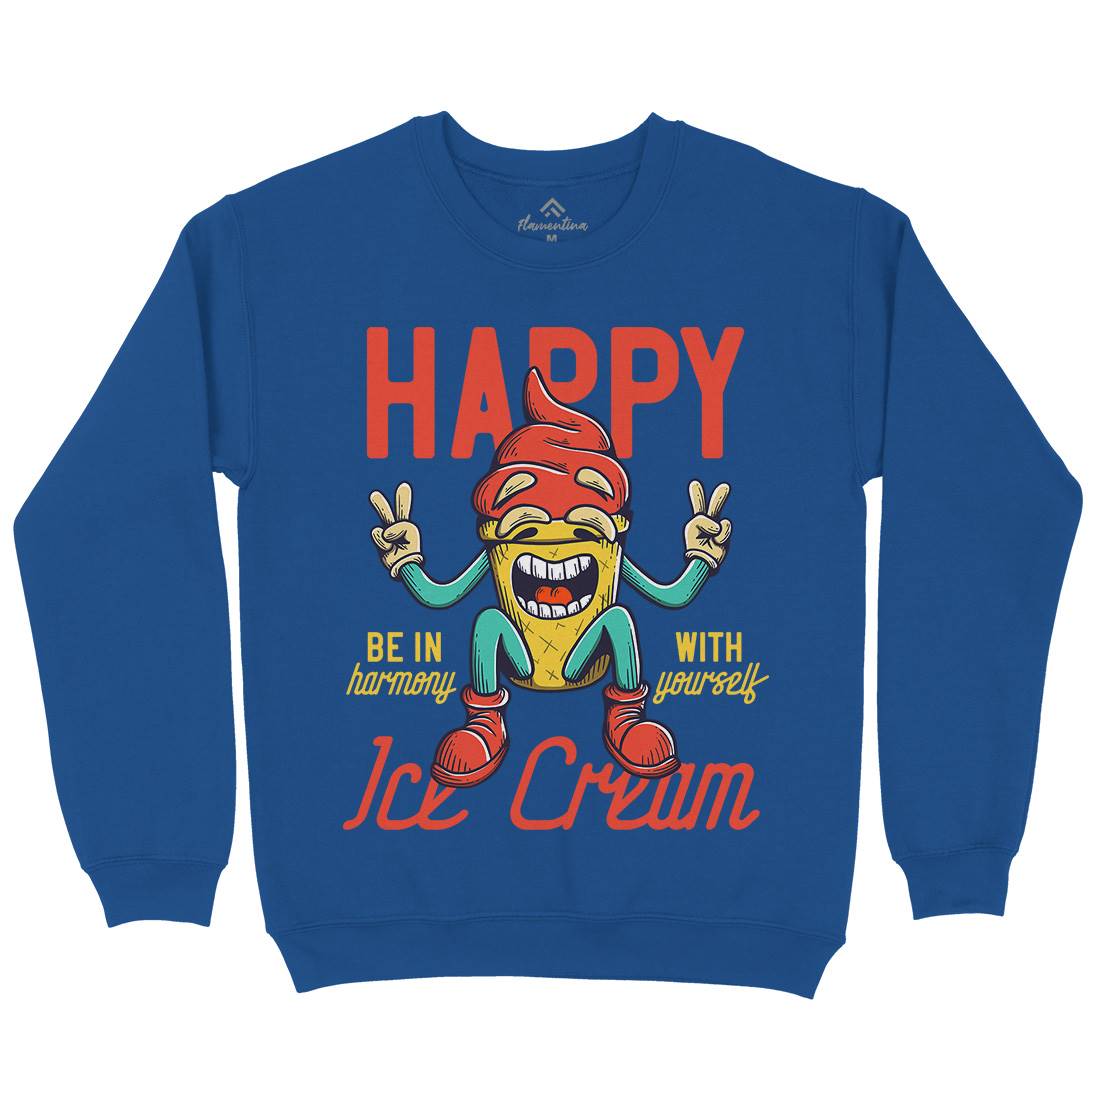 Happy Ice Cream Kids Crew Neck Sweatshirt Food D940